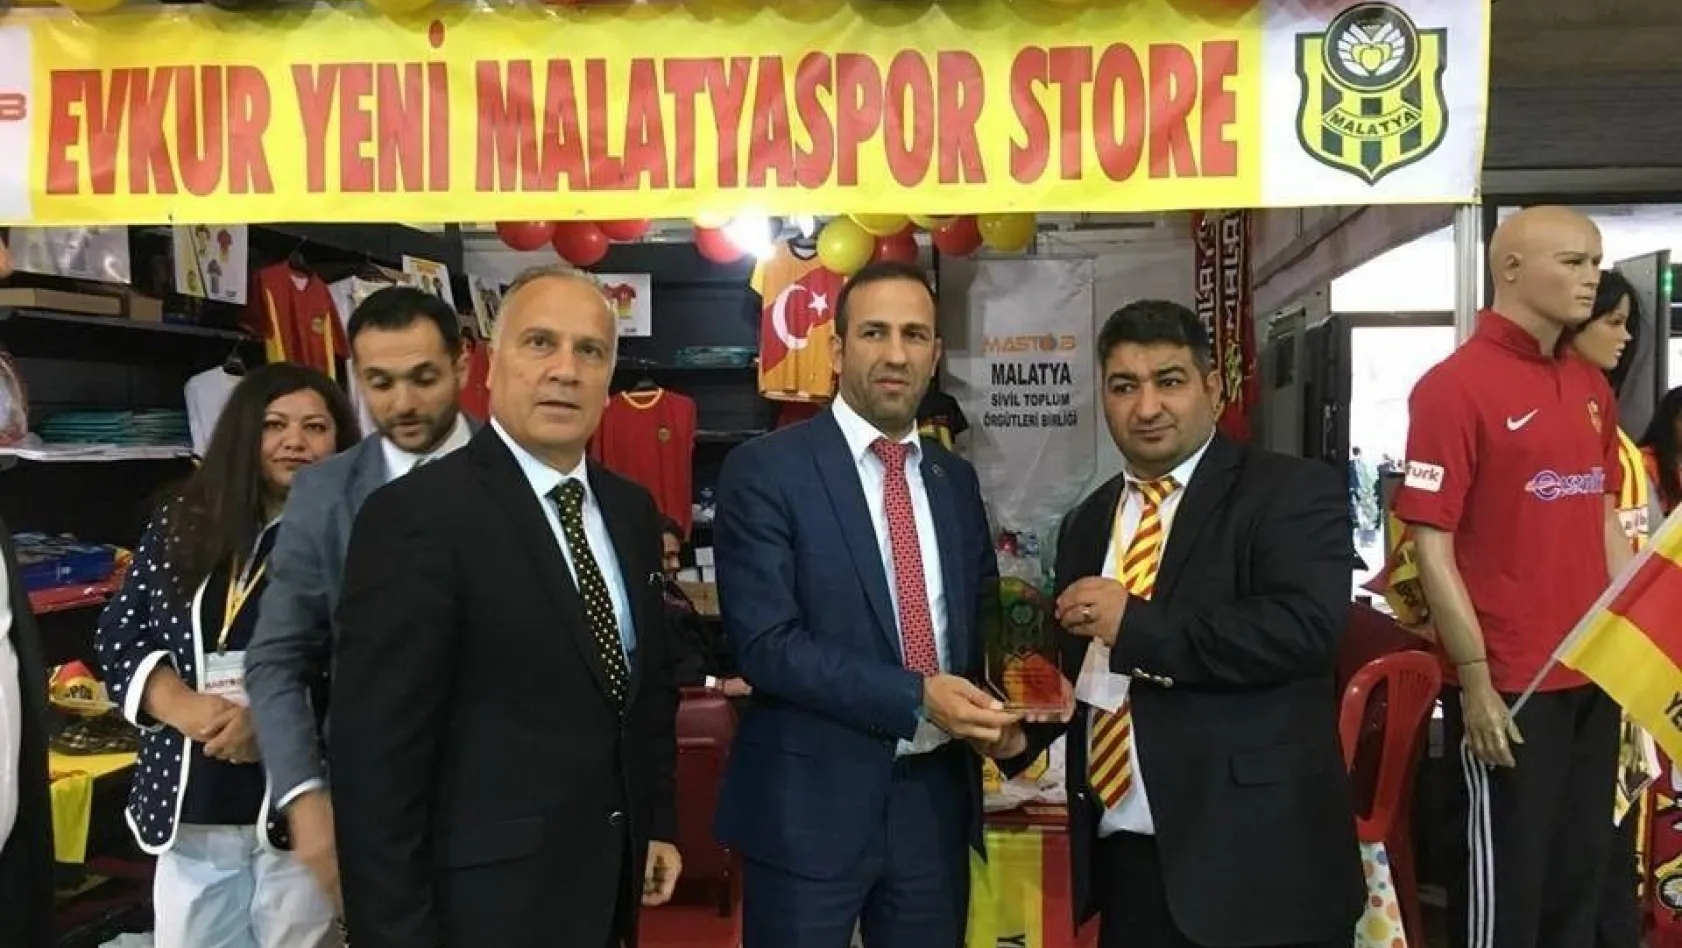 Evkur Yeni Malatyaspor'un Ankara Malatya Tanıtım Günleri'ndeki standında 17 bin 33 TL'lik satış yapıldı
